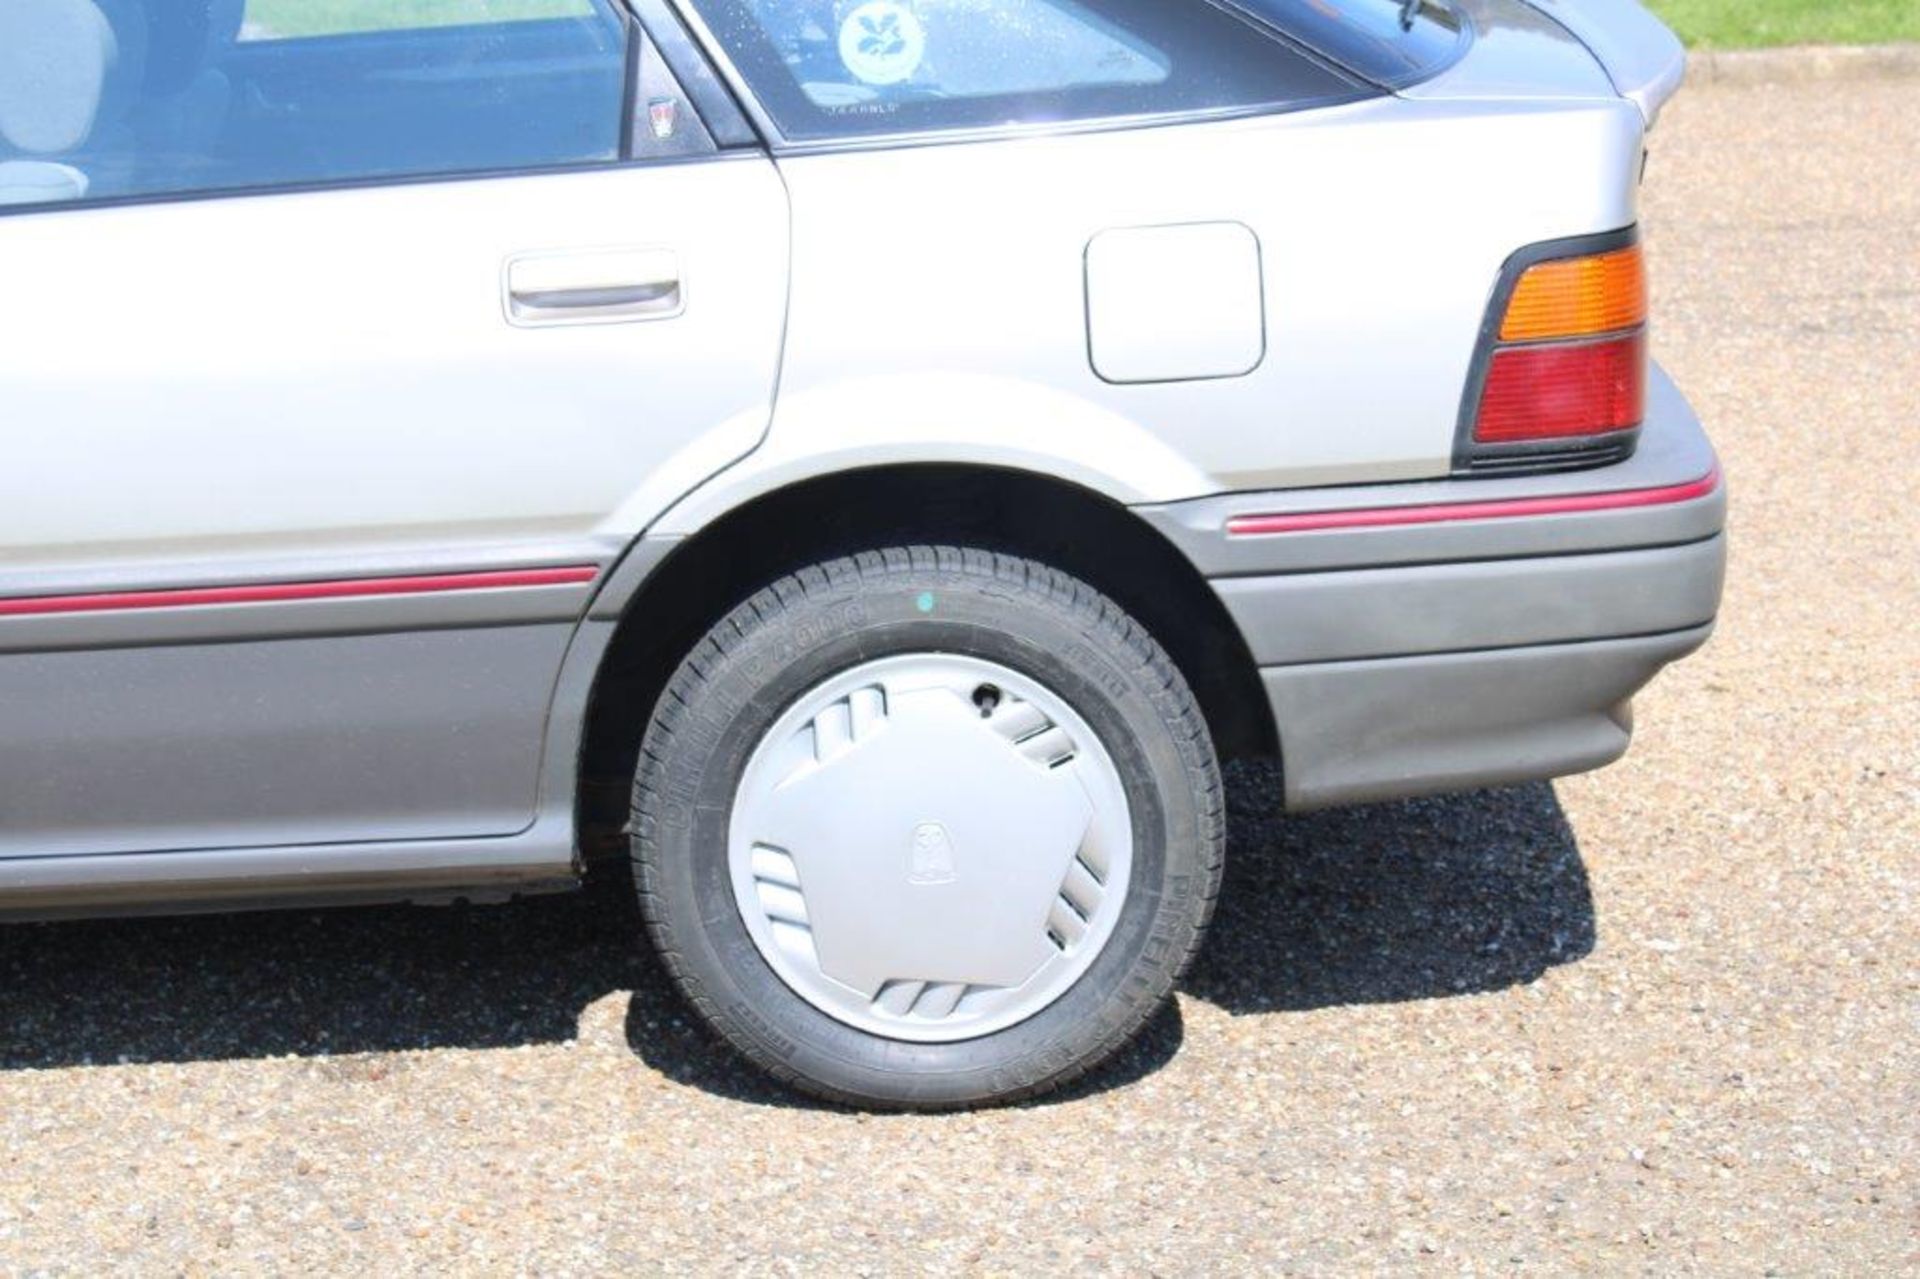 1992 Rover 216 GSi Auto - Image 8 of 24